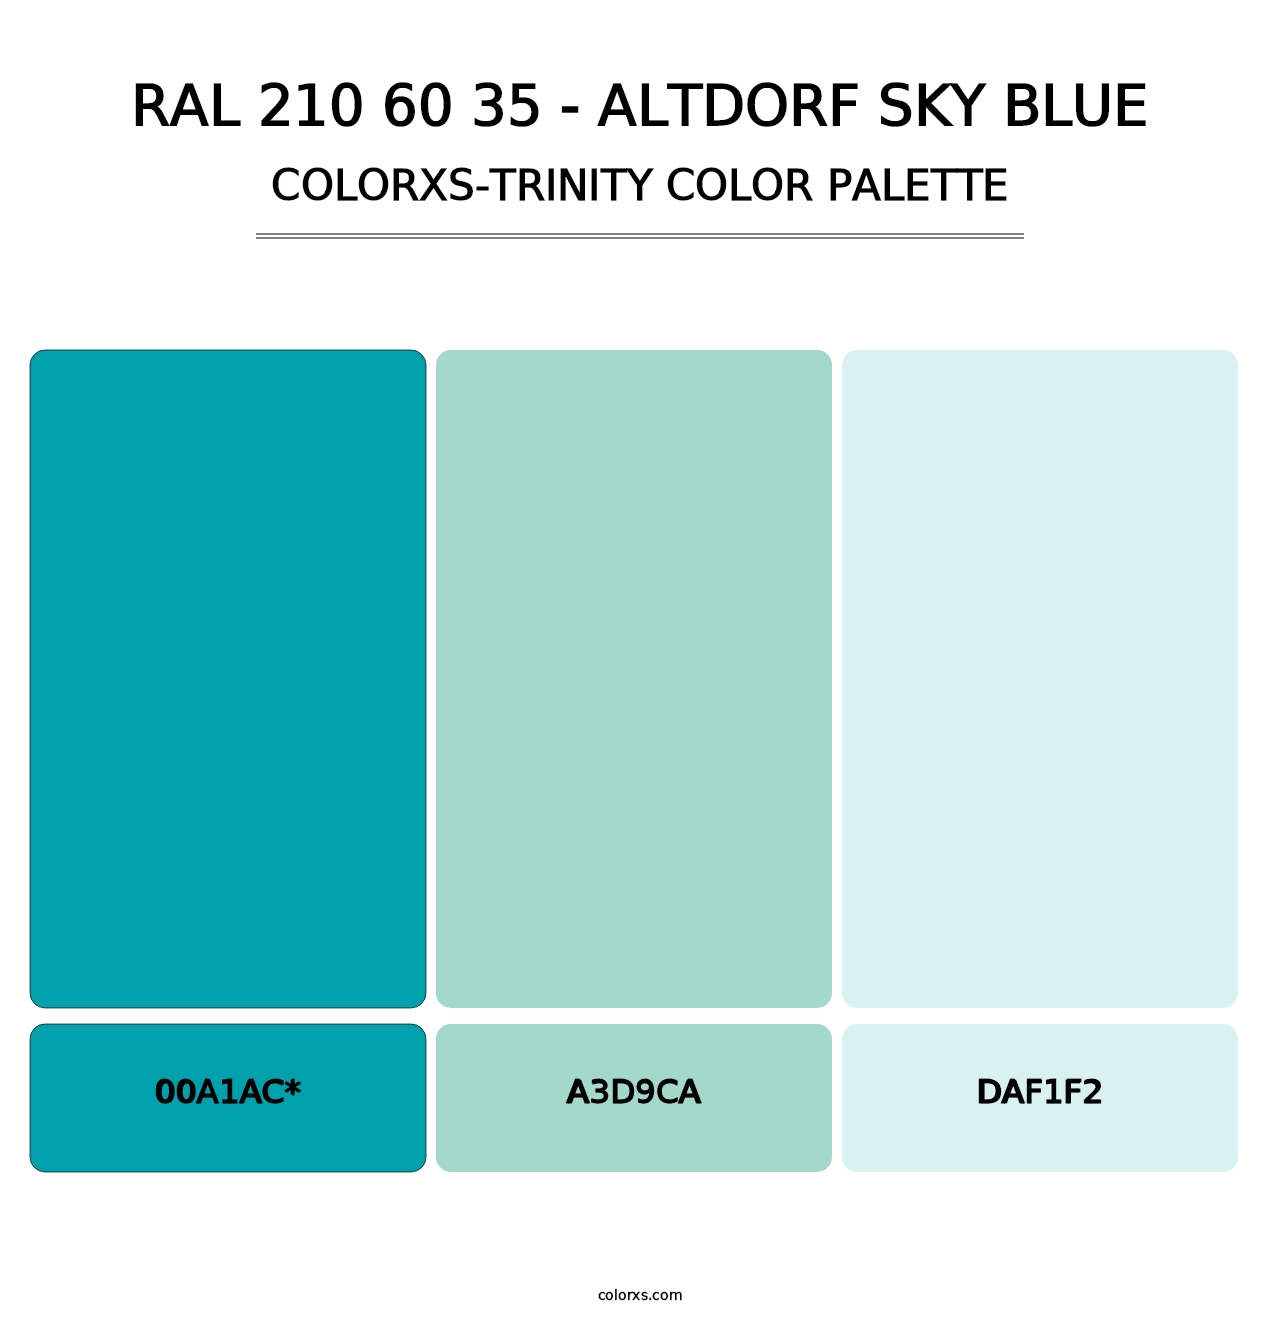 RAL 210 60 35 - Altdorf Sky Blue - Colorxs Trinity Palette